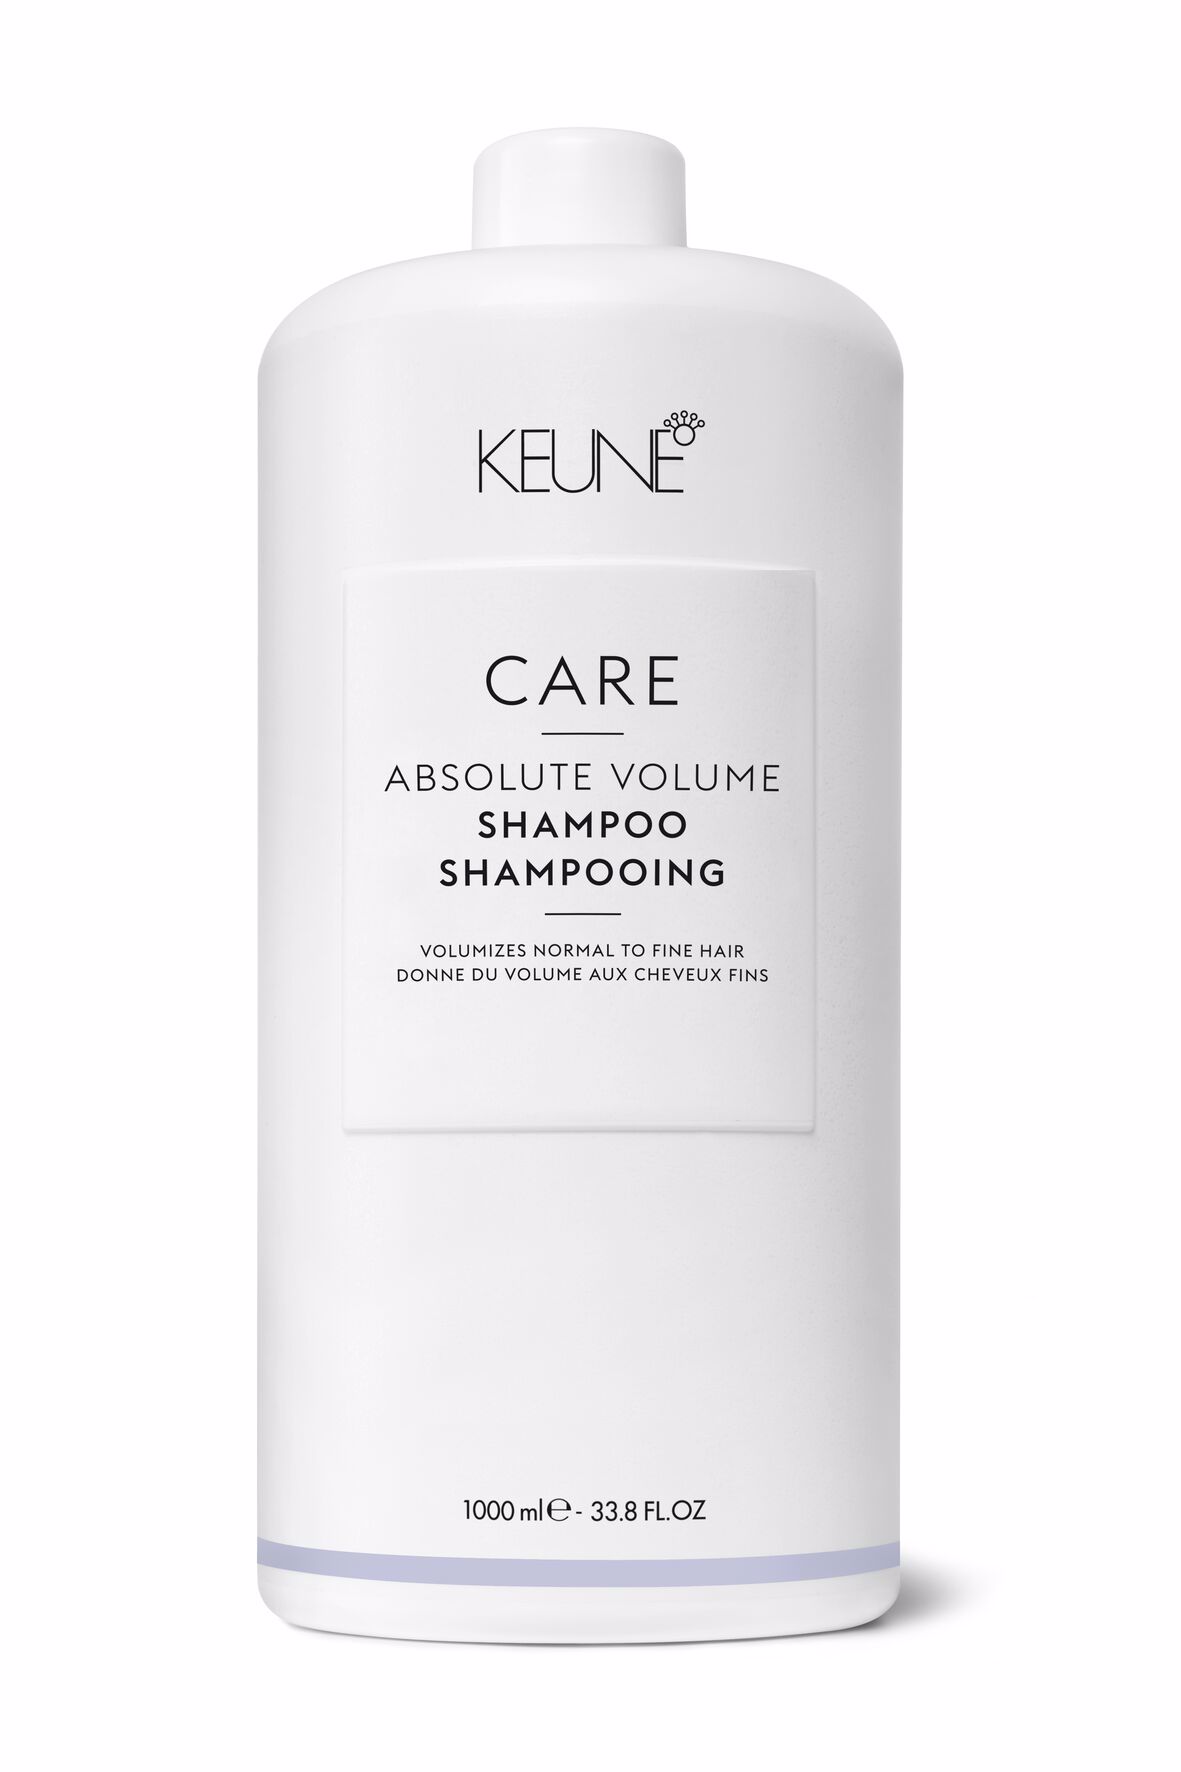 Probieren Sie das Care Absolute Volume Shampoo: Haare mit Volumen, ohne sie zu beschweren. Mit Pro-Vitamin B5 und Weizenproteinen für die perfekte Haarstruktur. Auf keune.ch erhältlich.